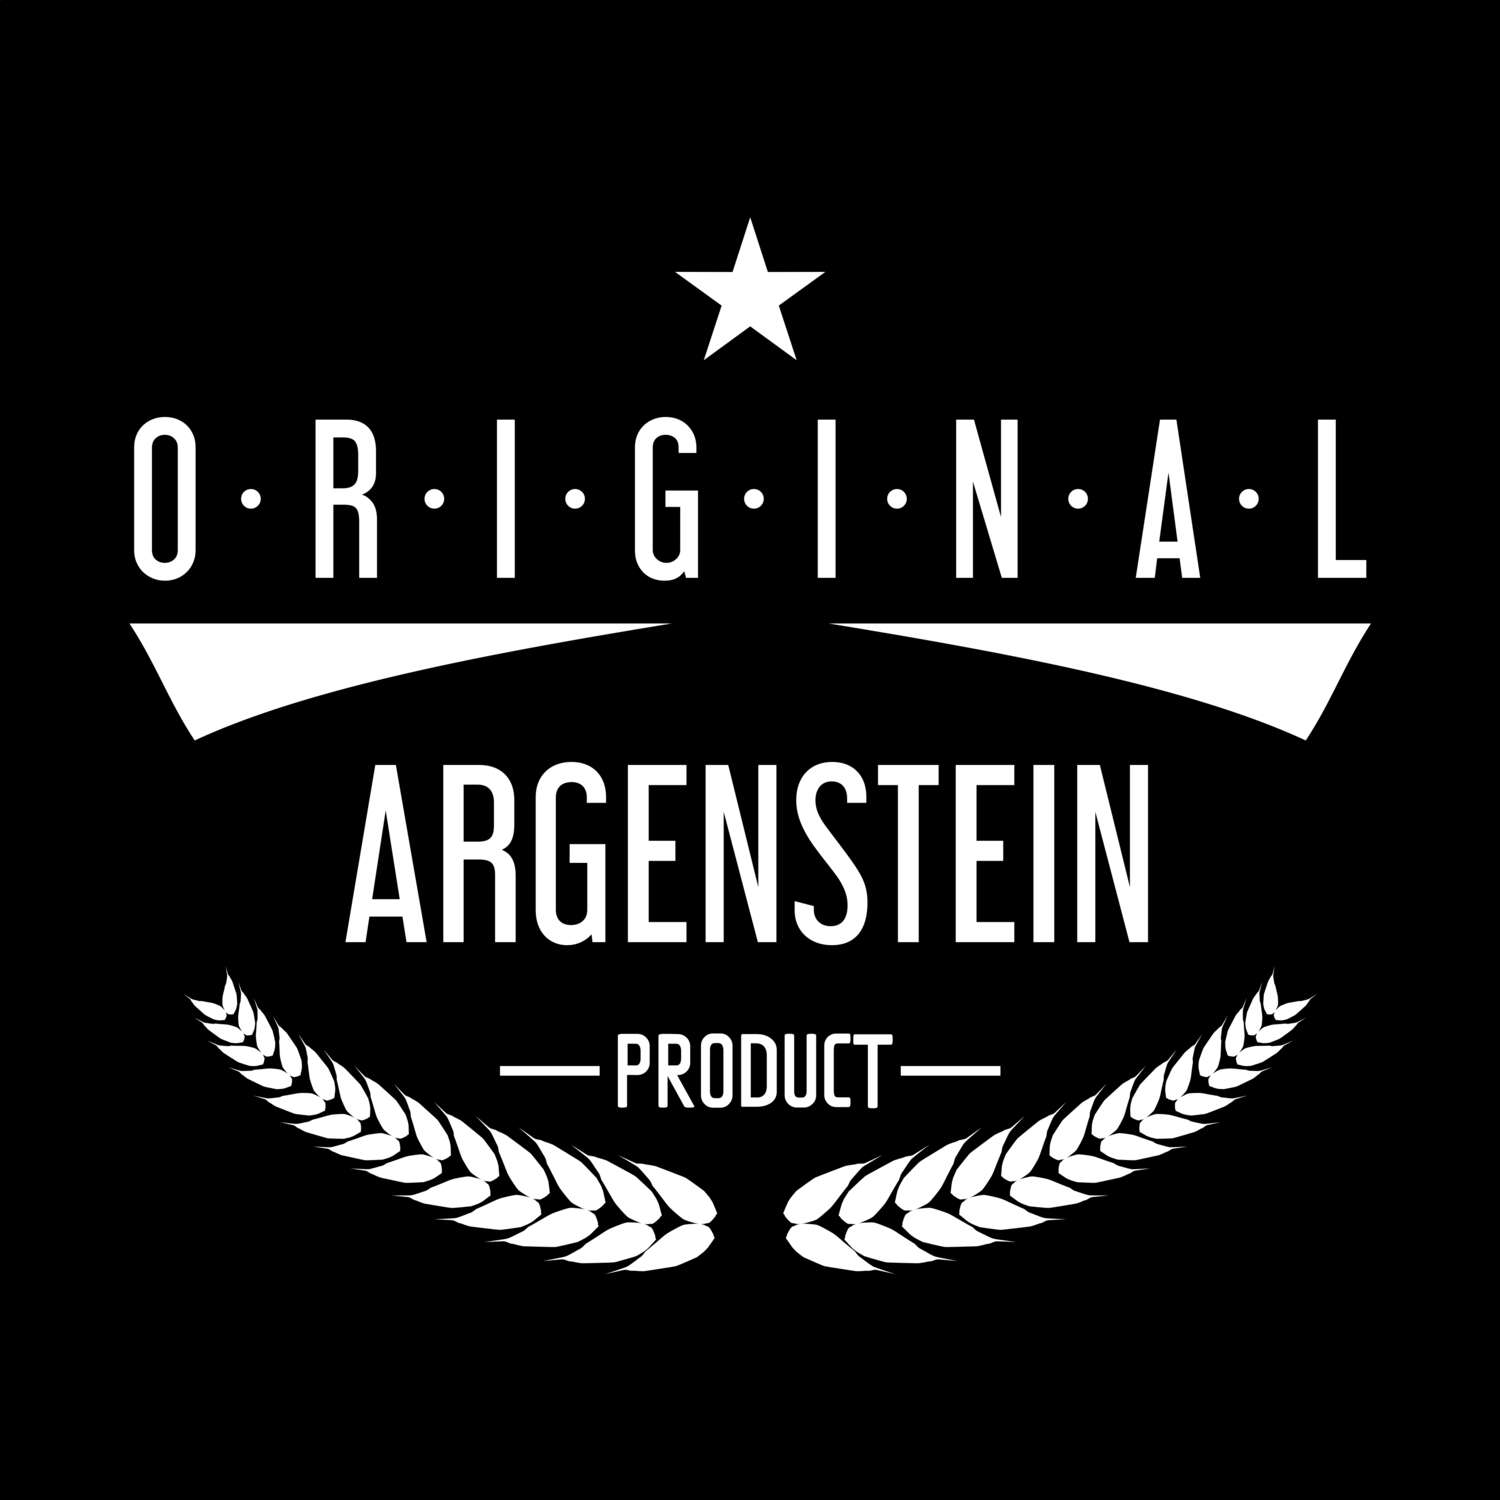 Argenstein T-Shirt »Original Product«